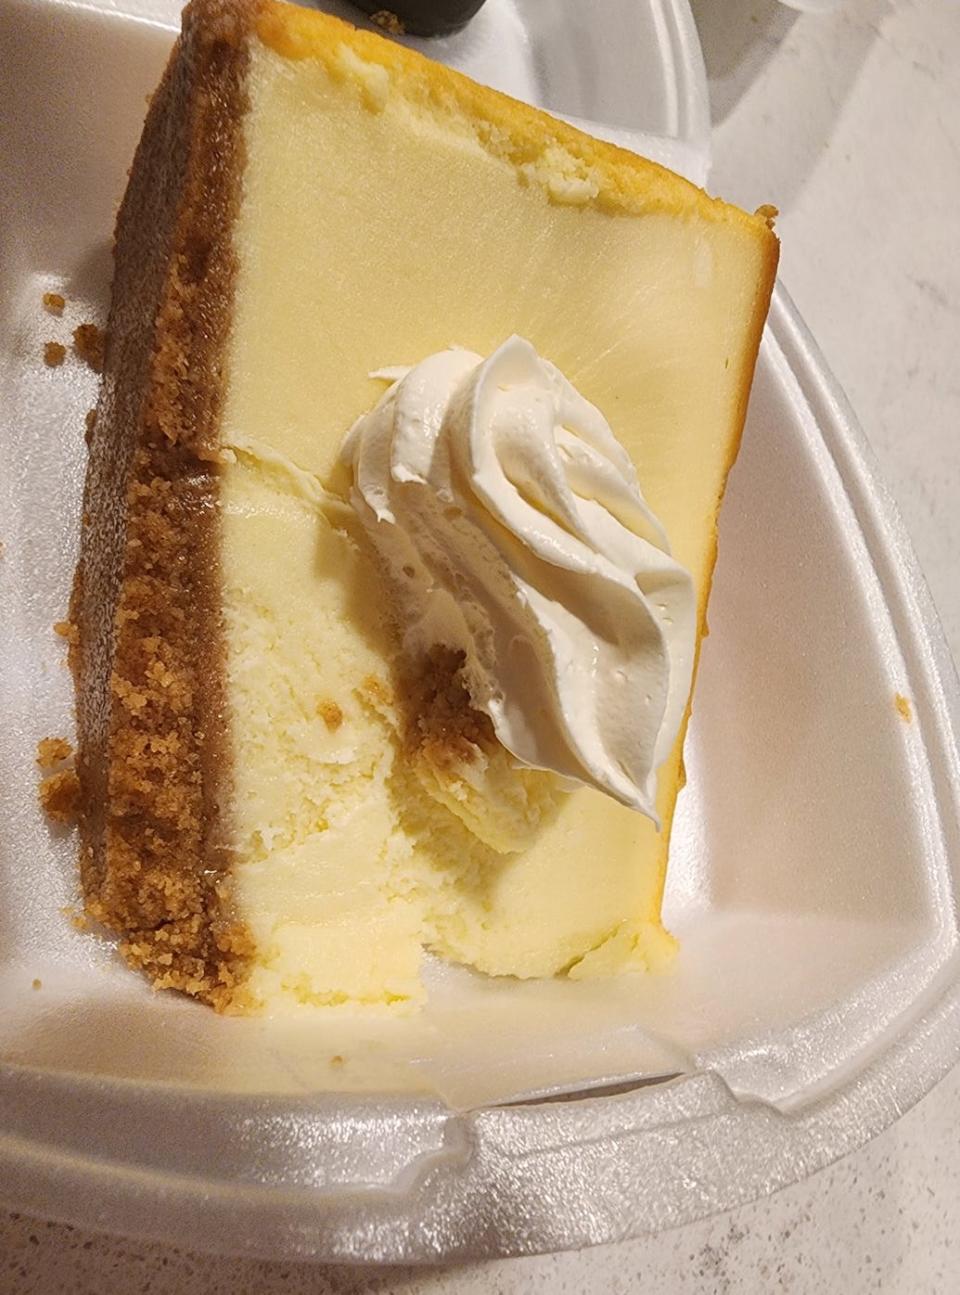 A slice of Big Ole cheesecake